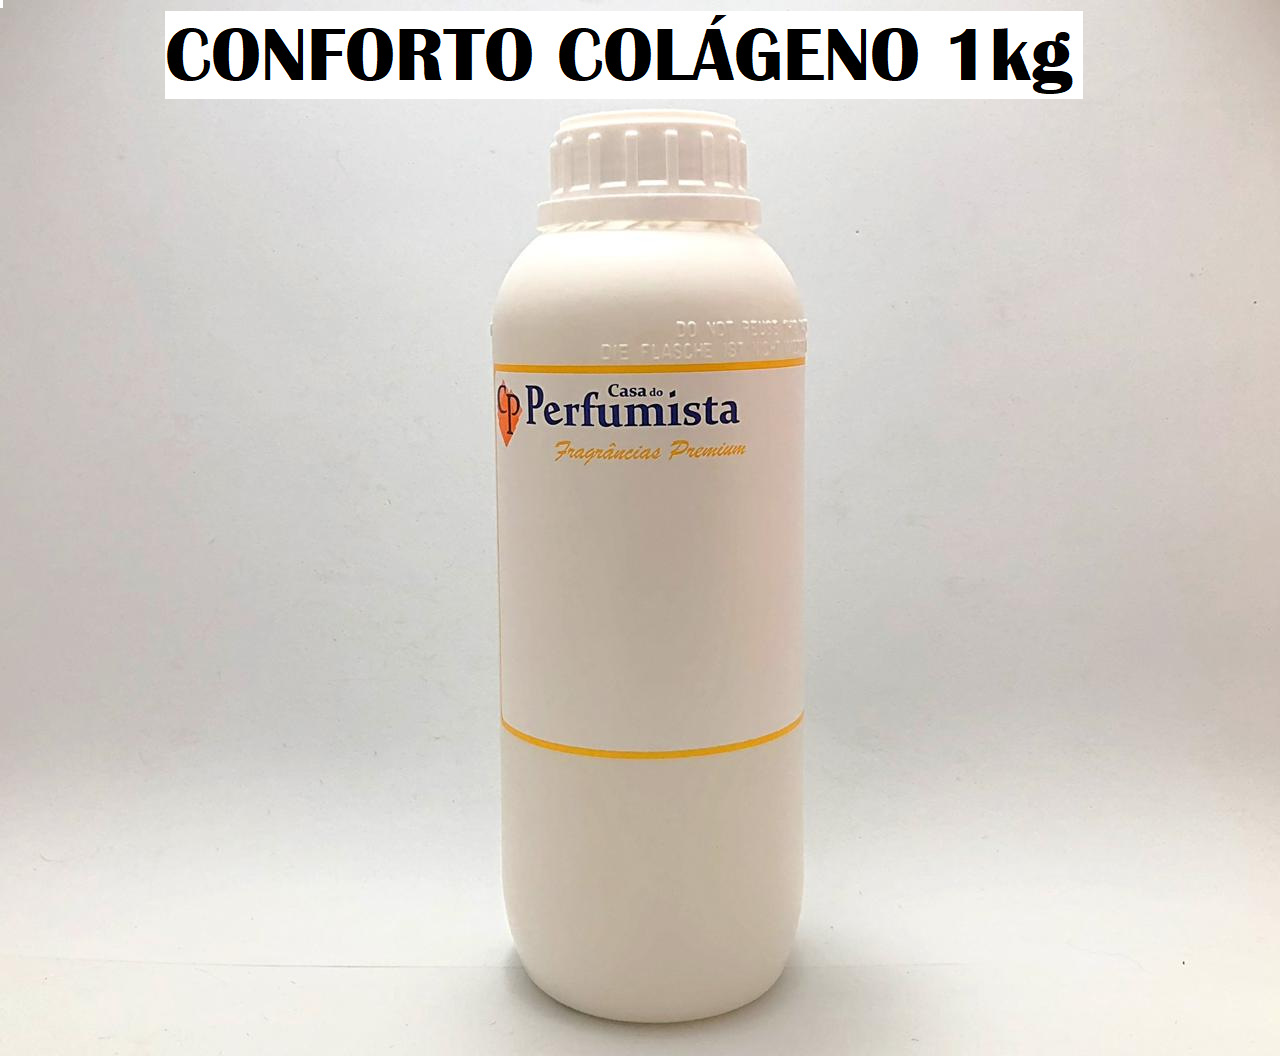 CONFORTO COLÁGENO - 1kg